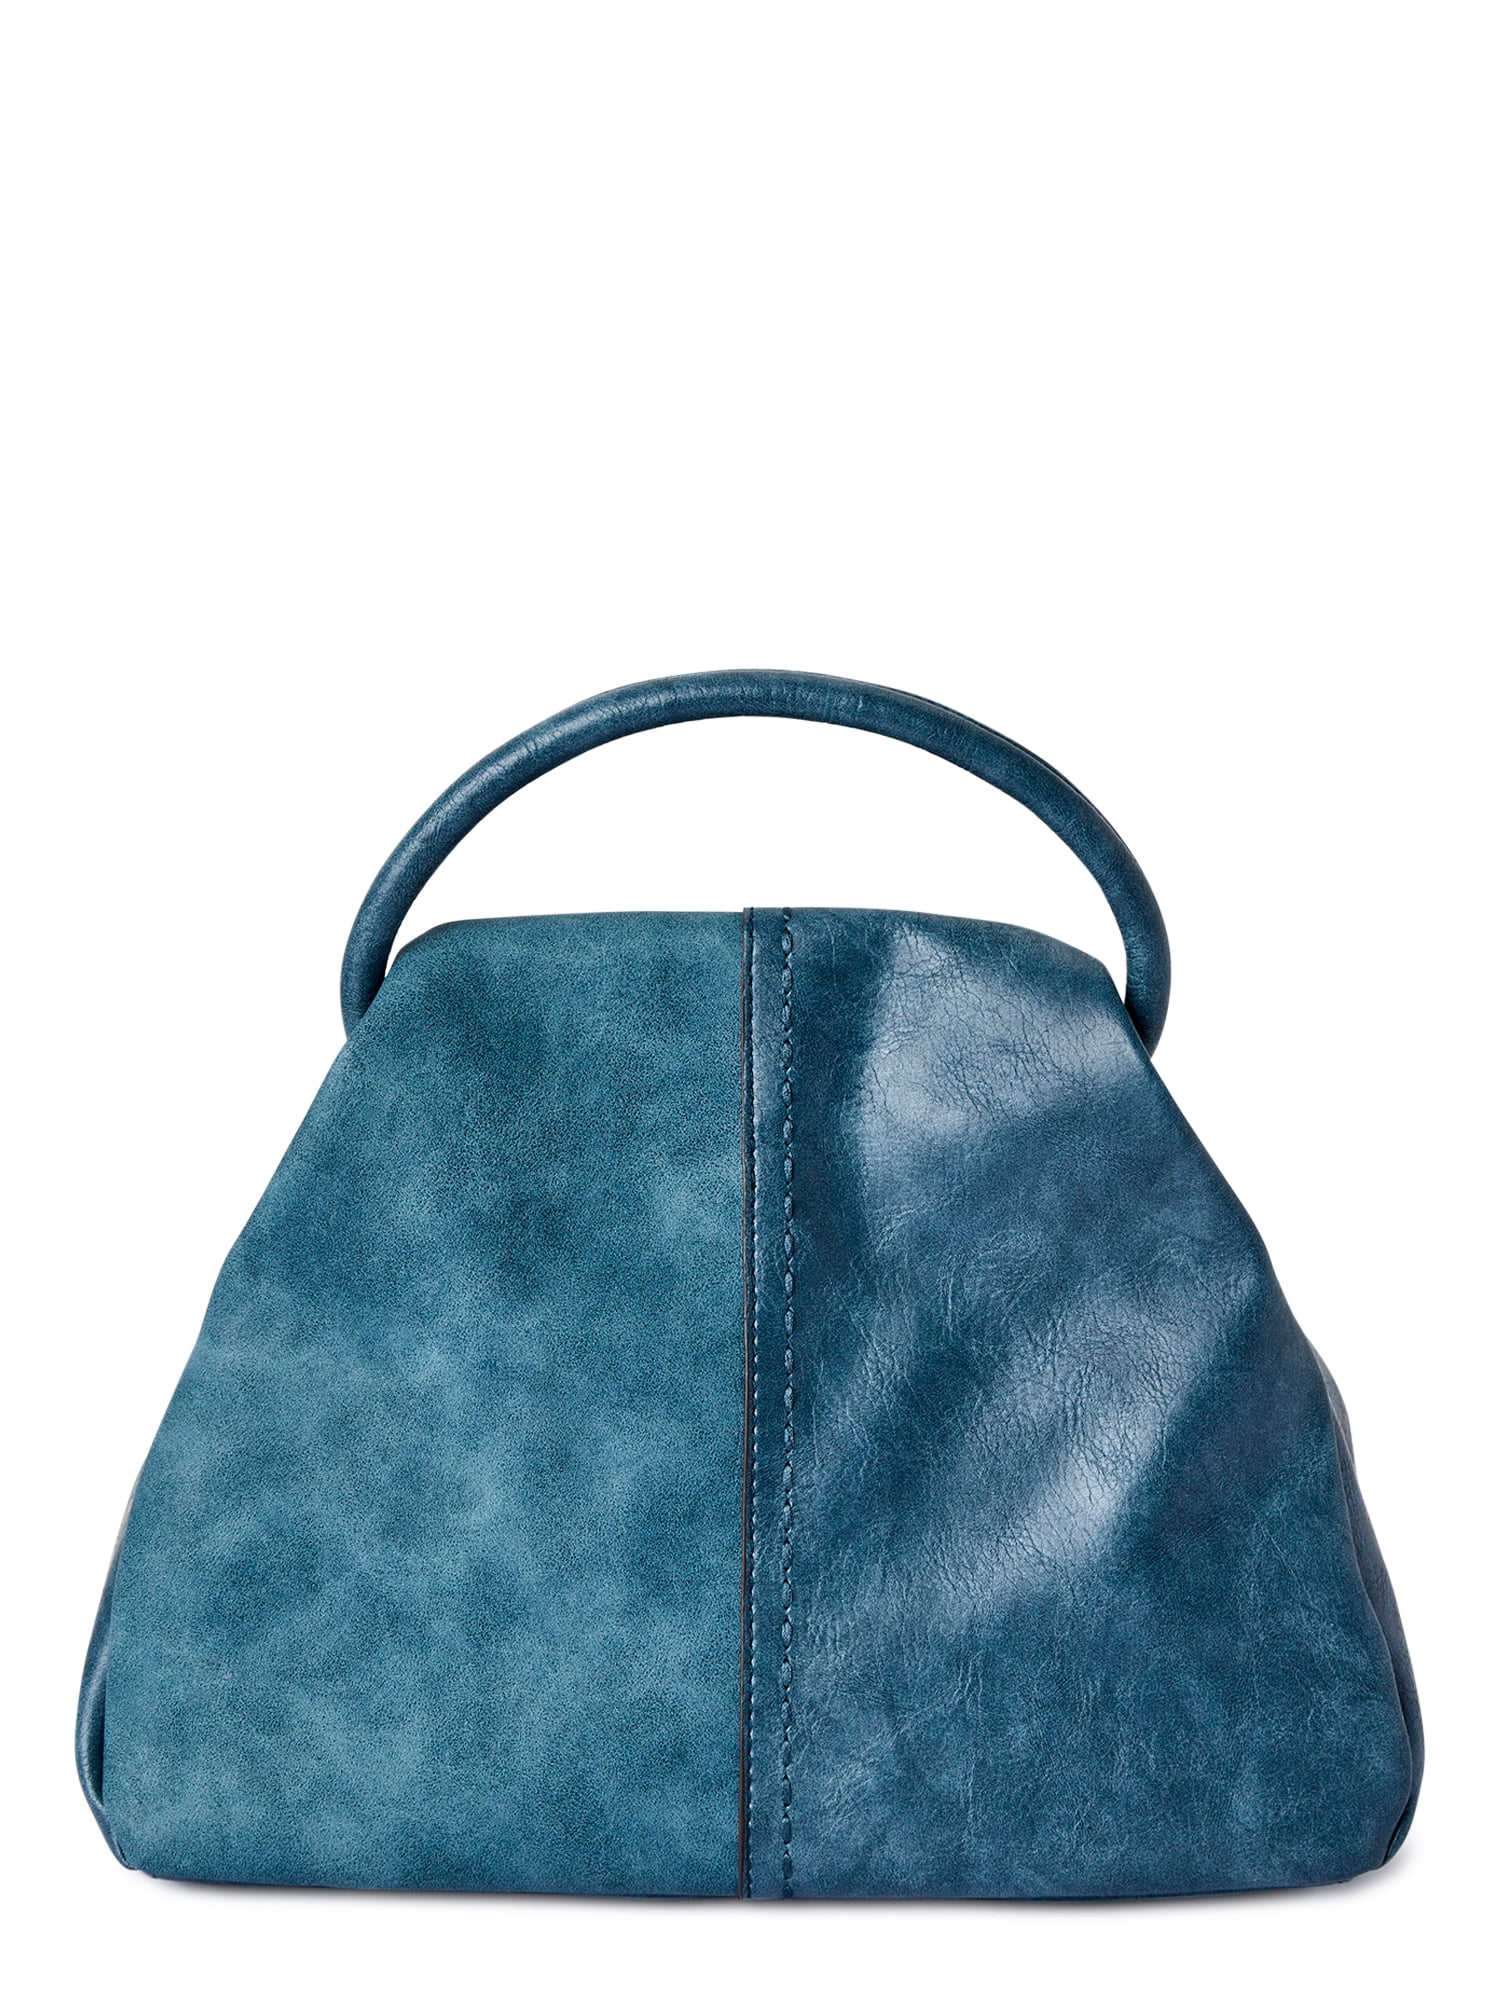 Time and Tru Women’s Fiona Crossbody Handbag Blue